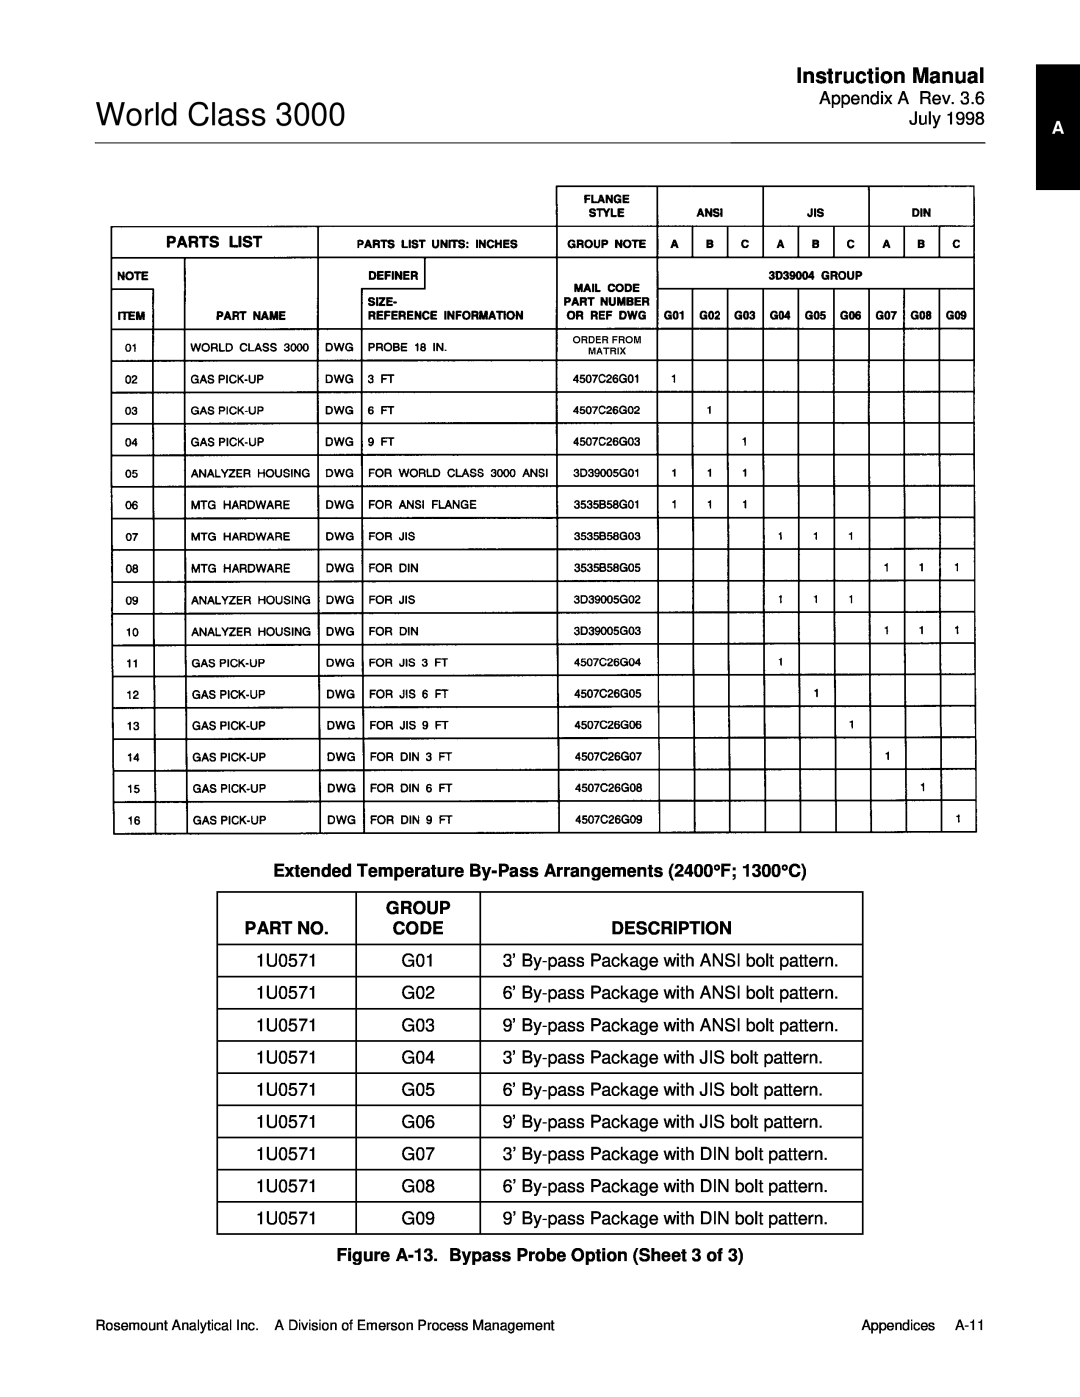 Emerson 3000 manual World Class, Group, Code, Description, Figure A-13.Bypass Probe Option Sheet 3 of 